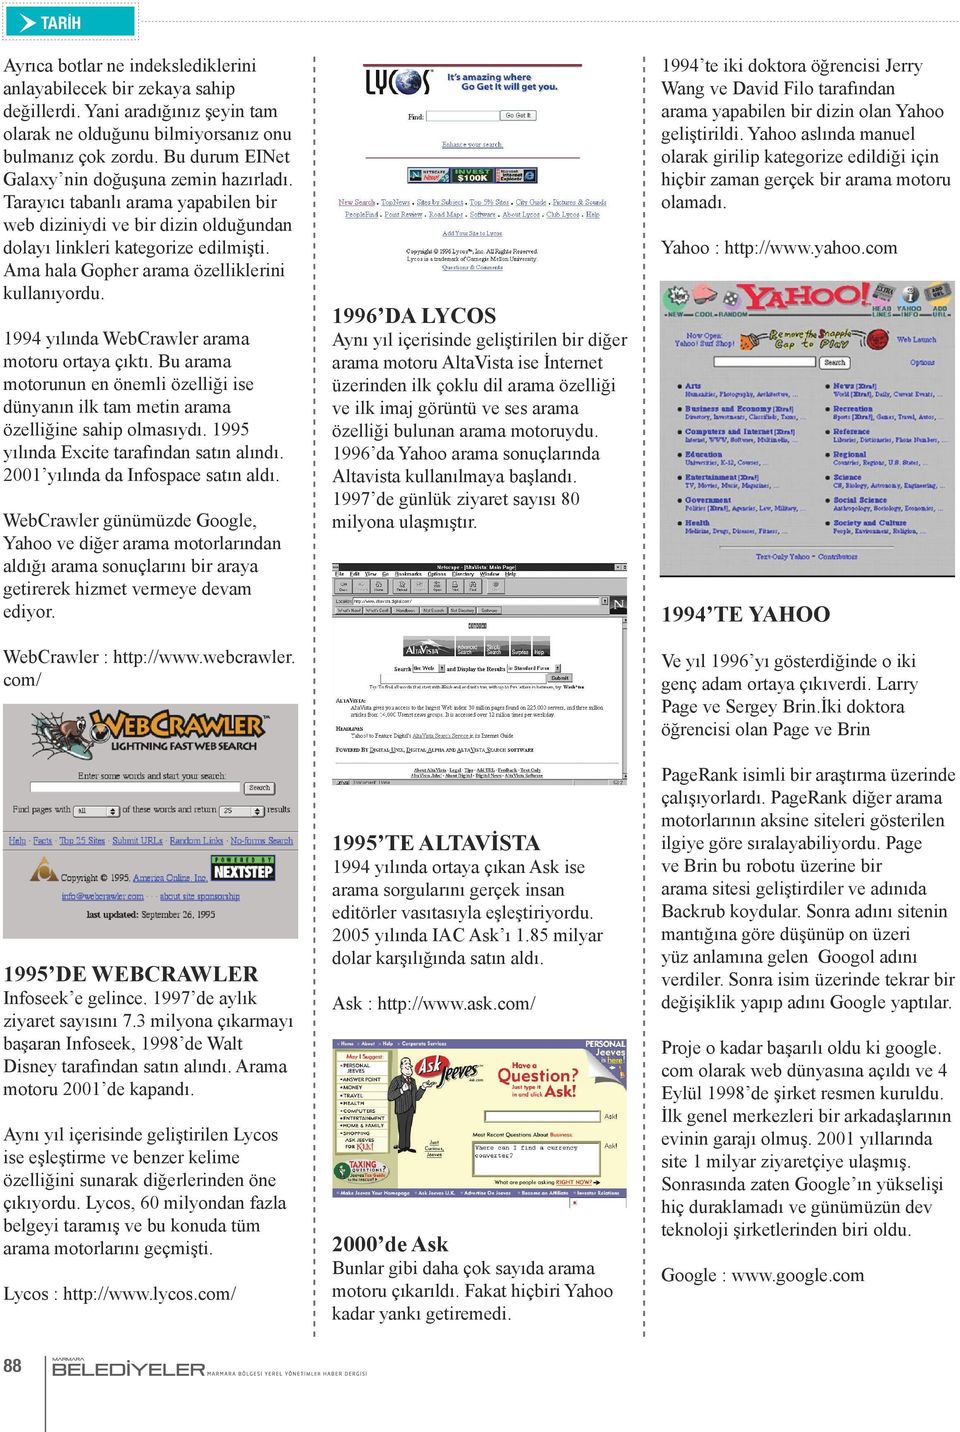 Ama hala Gopher arama özelliklerini kullanıyordu. 1994 yılında WebCrawler arama motoru ortaya çıktı. Bu arama motorunun en önemli özelliği ise dünyanın ilk tam metin arama özelliğine sahip olmasıydı.